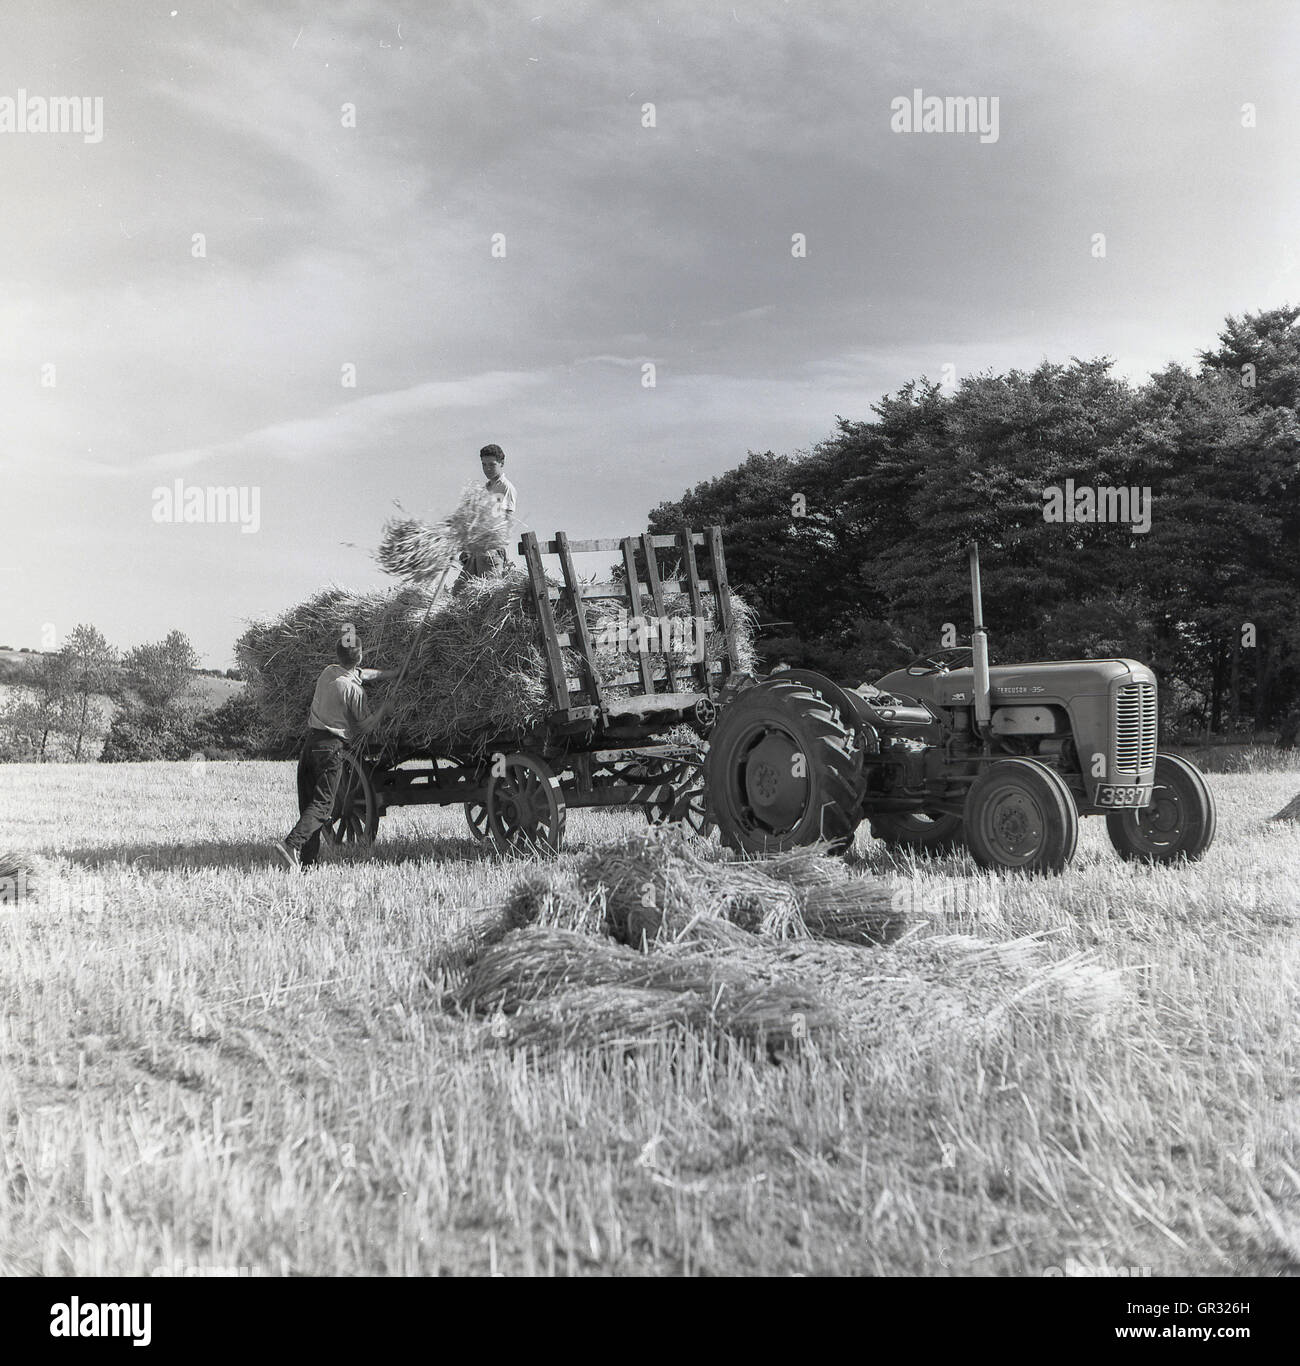 Années 1950, historique, un agriculteur de recueillir des ballots de foin sur le terrain et l'empilant sur une charrette attelée à un tracteur, avec un autre agriculteur aidant. Banque D'Images